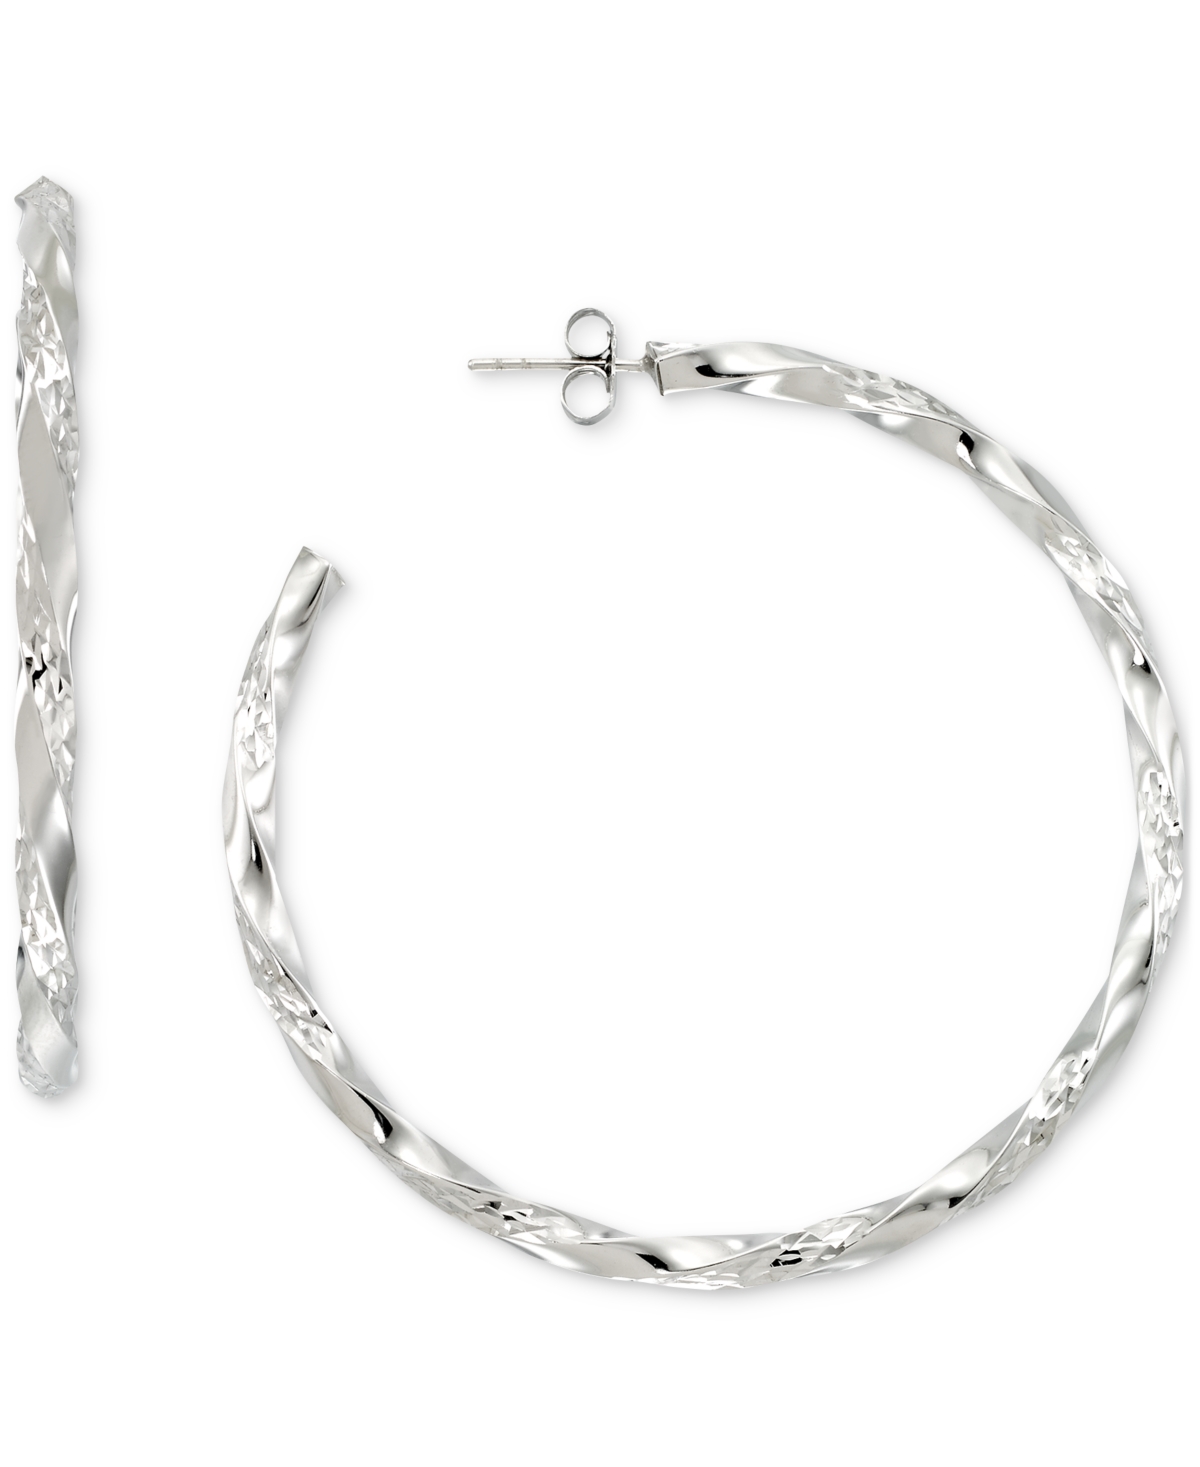 Macy's Diamond-cut C-hoop Earrings In 14k Gold Vermeil Over Sterling Silver 2-1/4" (also In Sterling Silver